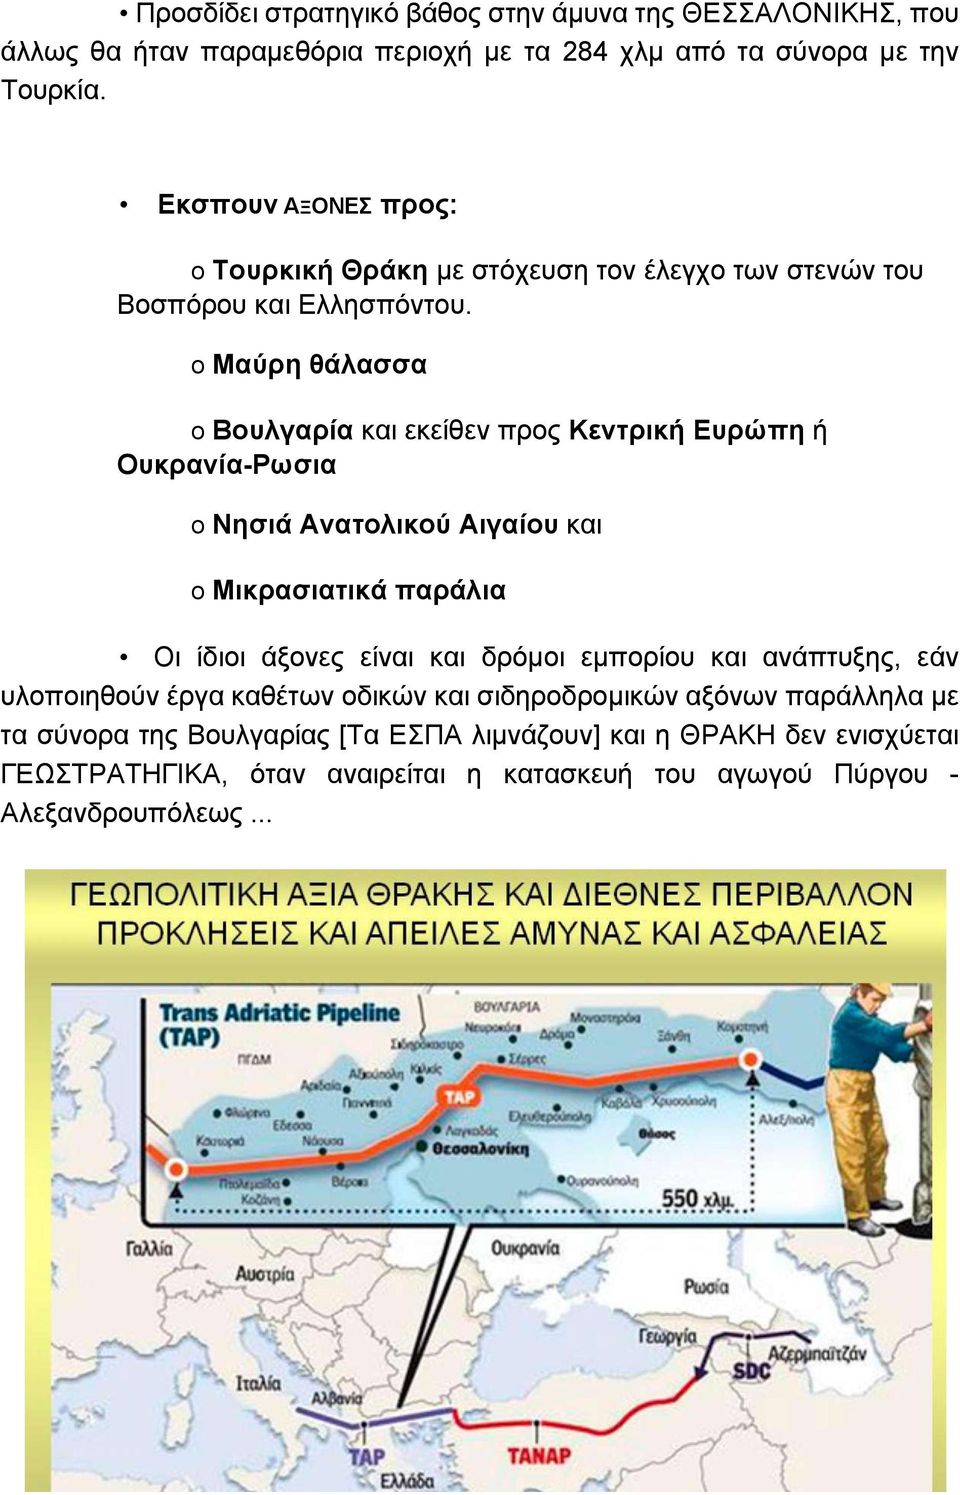 ο Μαύρη θάλασσα ο Βουλγαρία και εκείθεν προς Κεντρική Ευρώπη ή Ουκρανία-Ρωσια ο Νησιά Ανατολικού Αιγαίου και ο Μικρασιατικά παράλια Οι ίδιοι άξονες είναι και δρόμοι